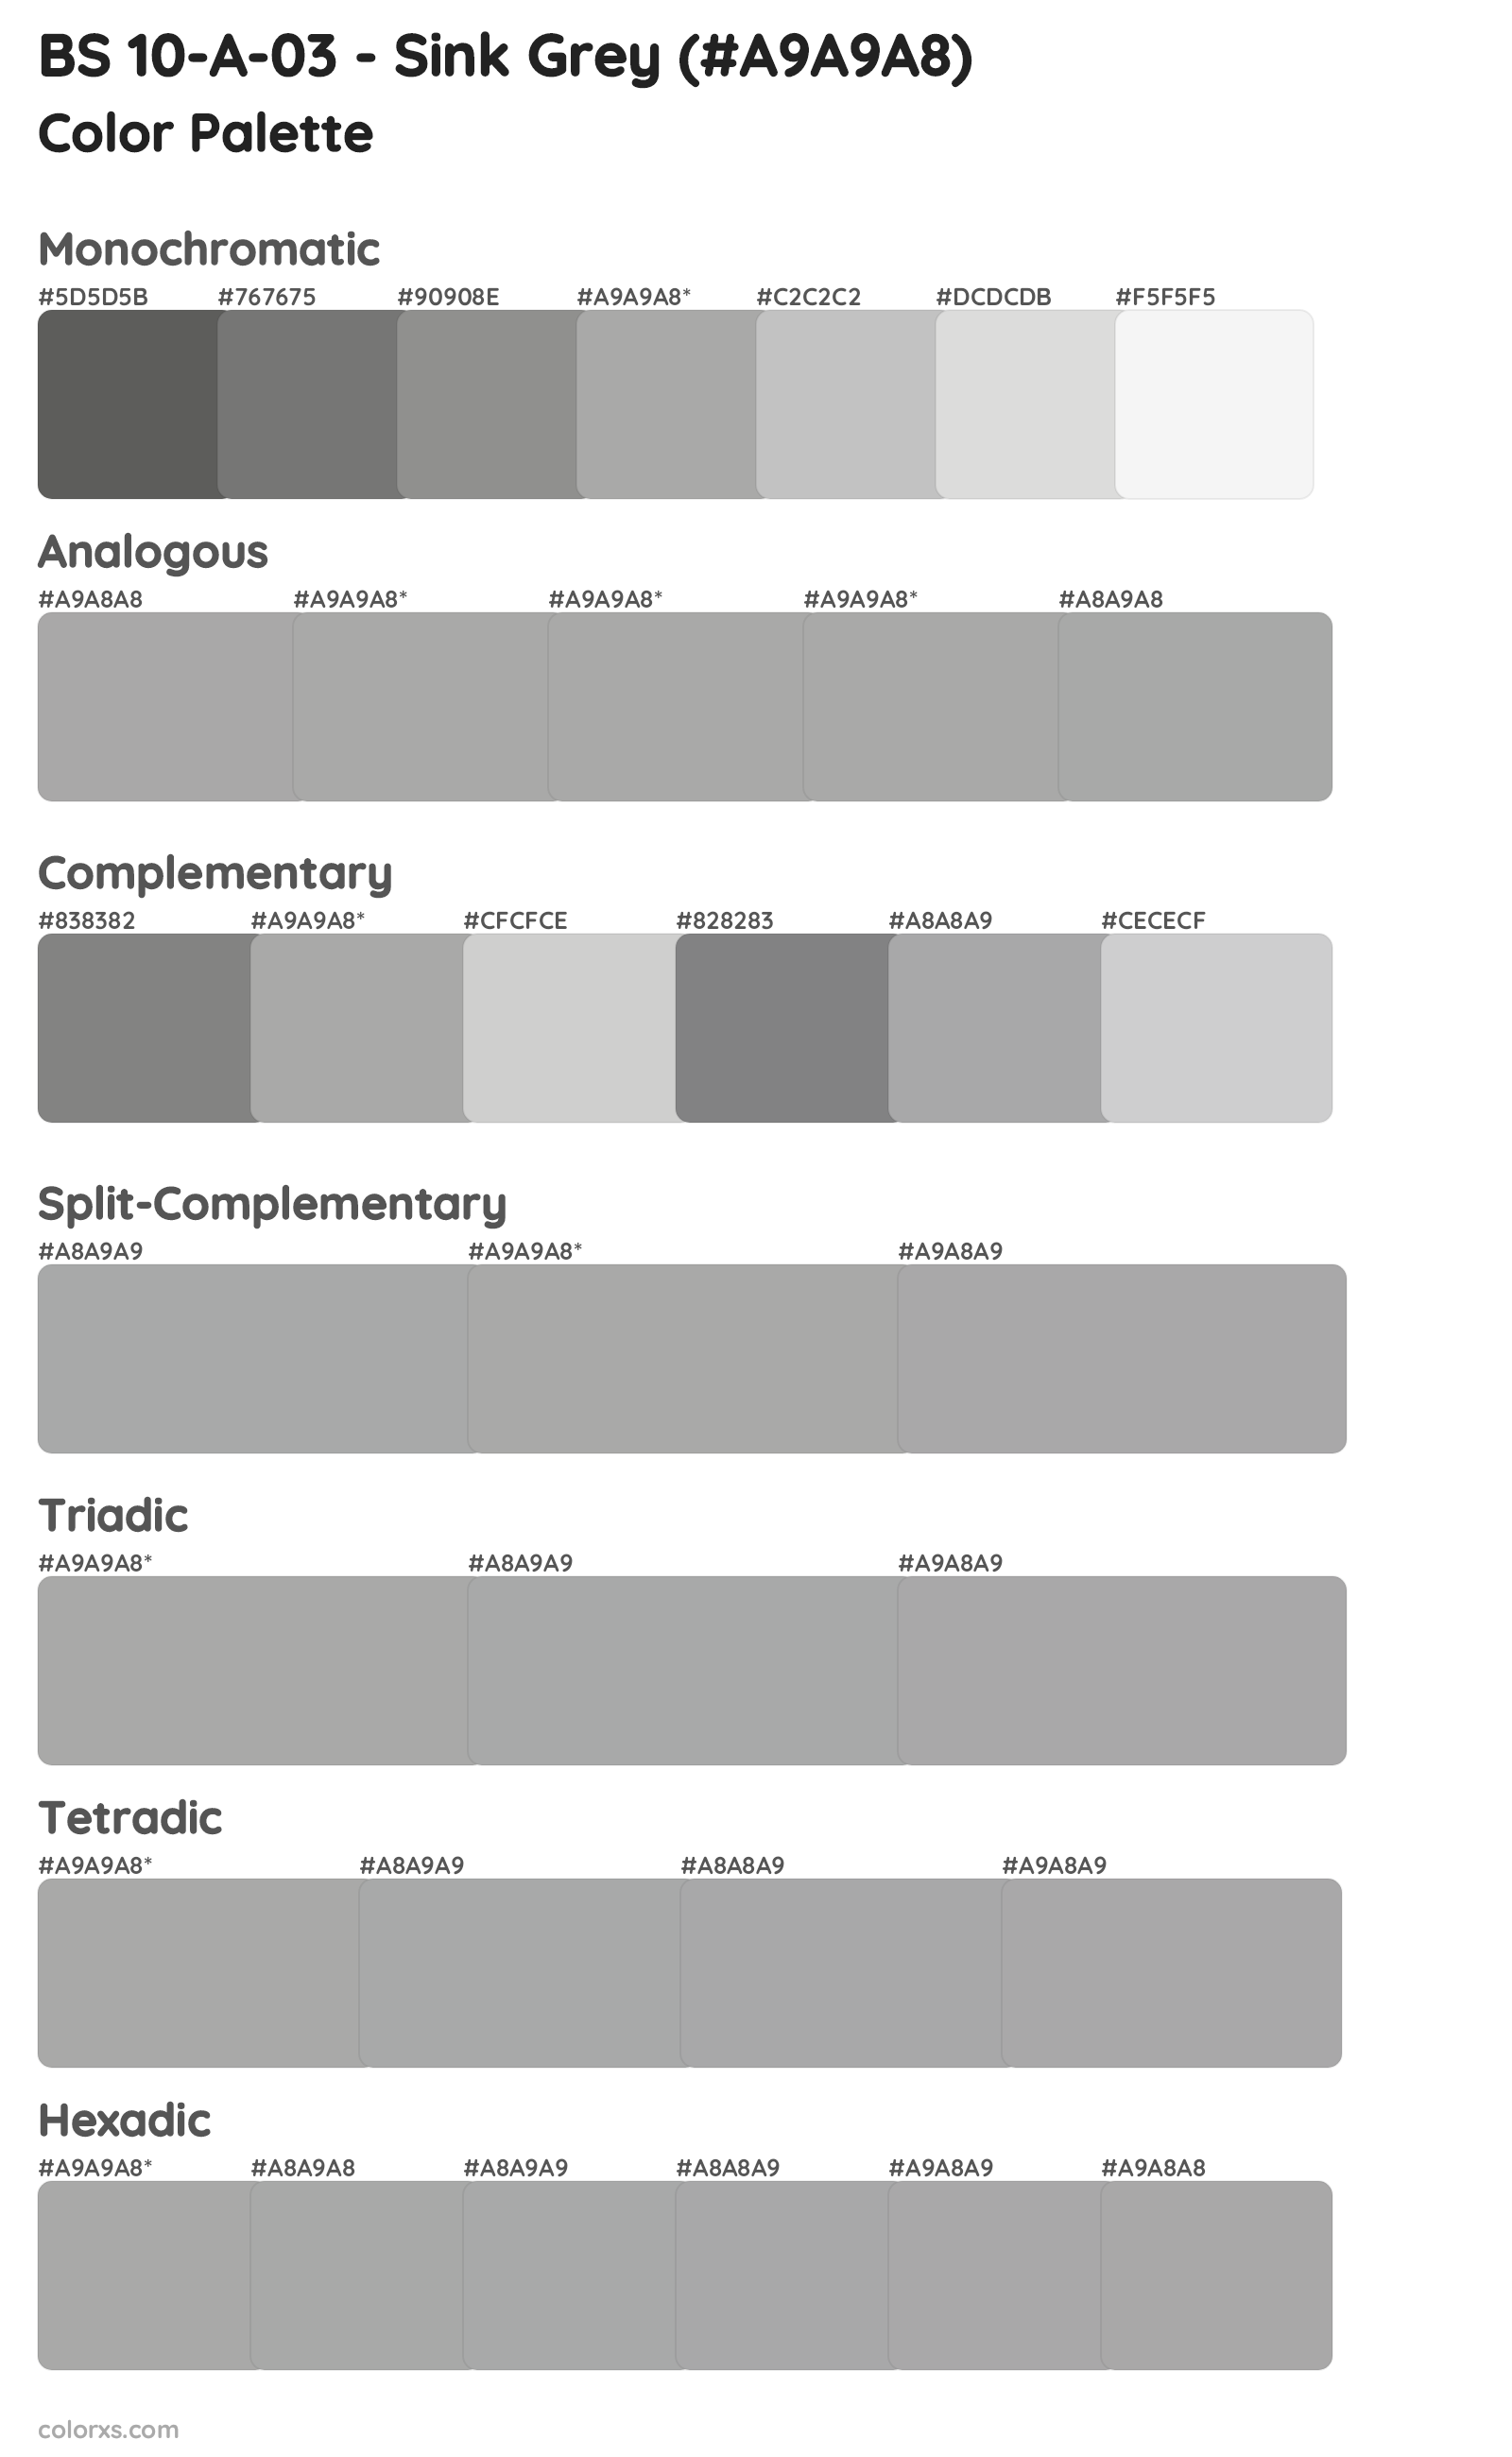 BS 10-A-03 - Sink Grey Color Scheme Palettes